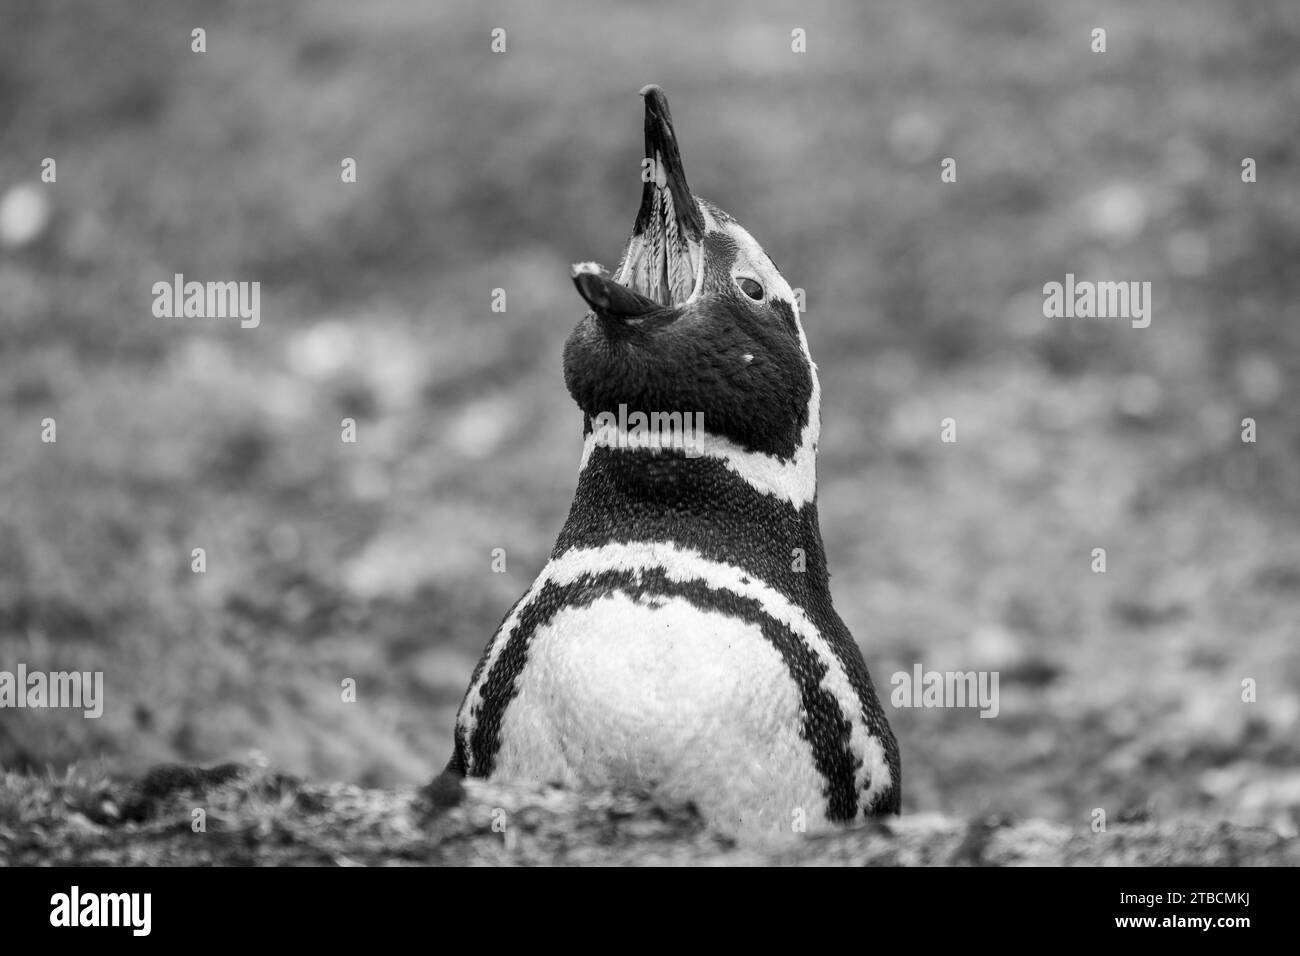 Îles Falkland, îles Falkland occidentales, île Saunders. Manchot magellanique (Spheniscus magellanicus) à bouche ouverte montrant des épis de papilles. Banque D'Images